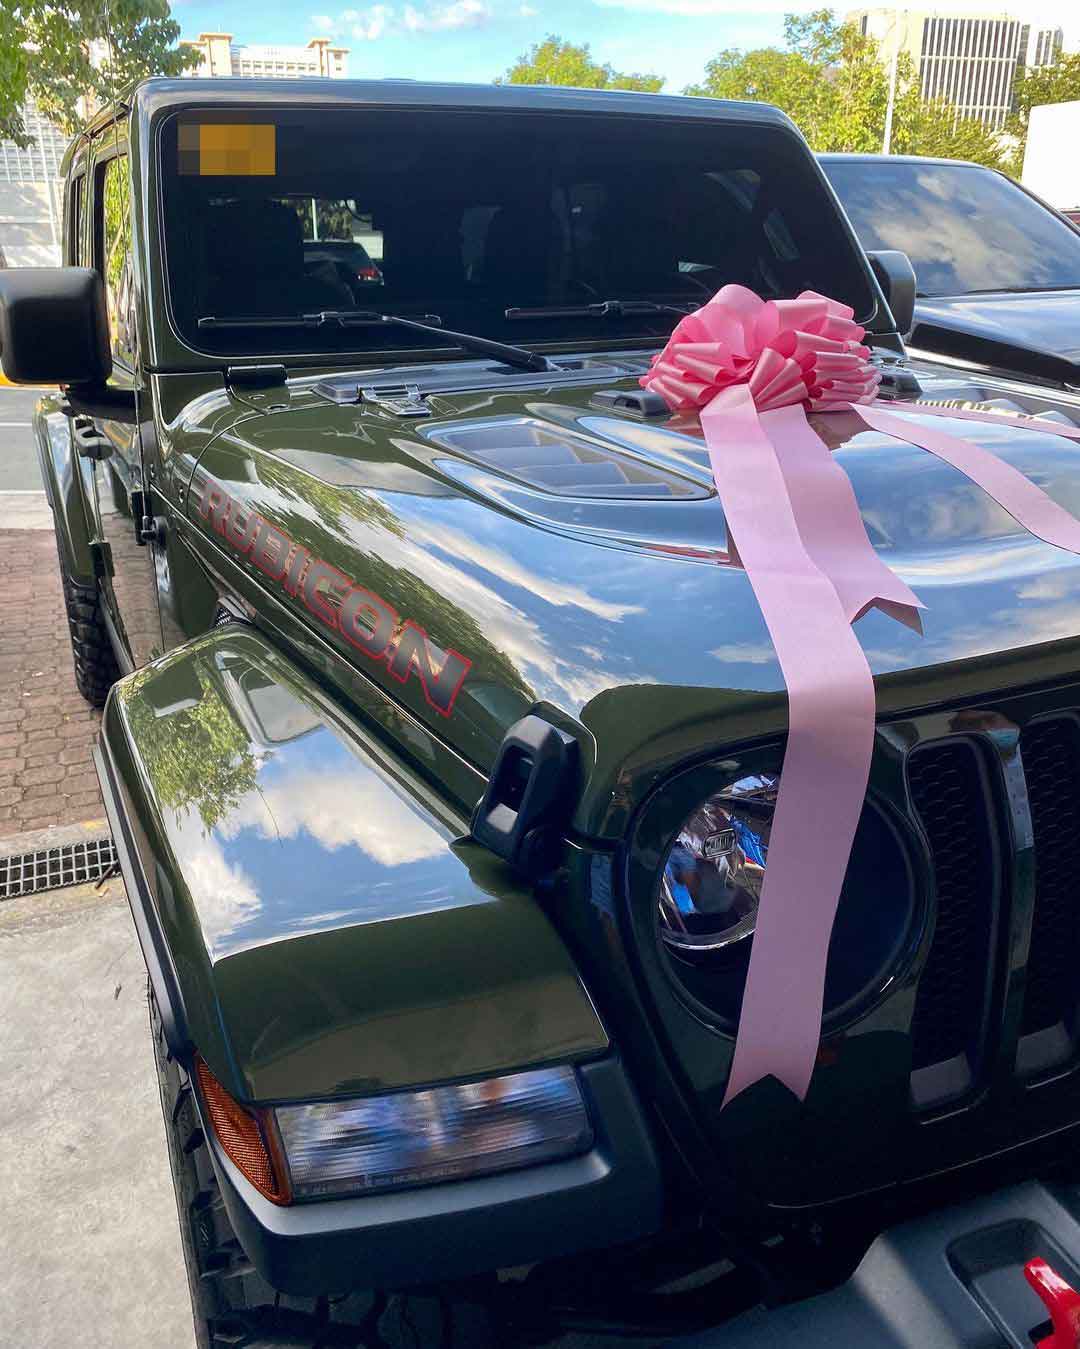 Richard Guiterrez Jeep Wrangler Rubicon gift to wife Sarah Lahbati